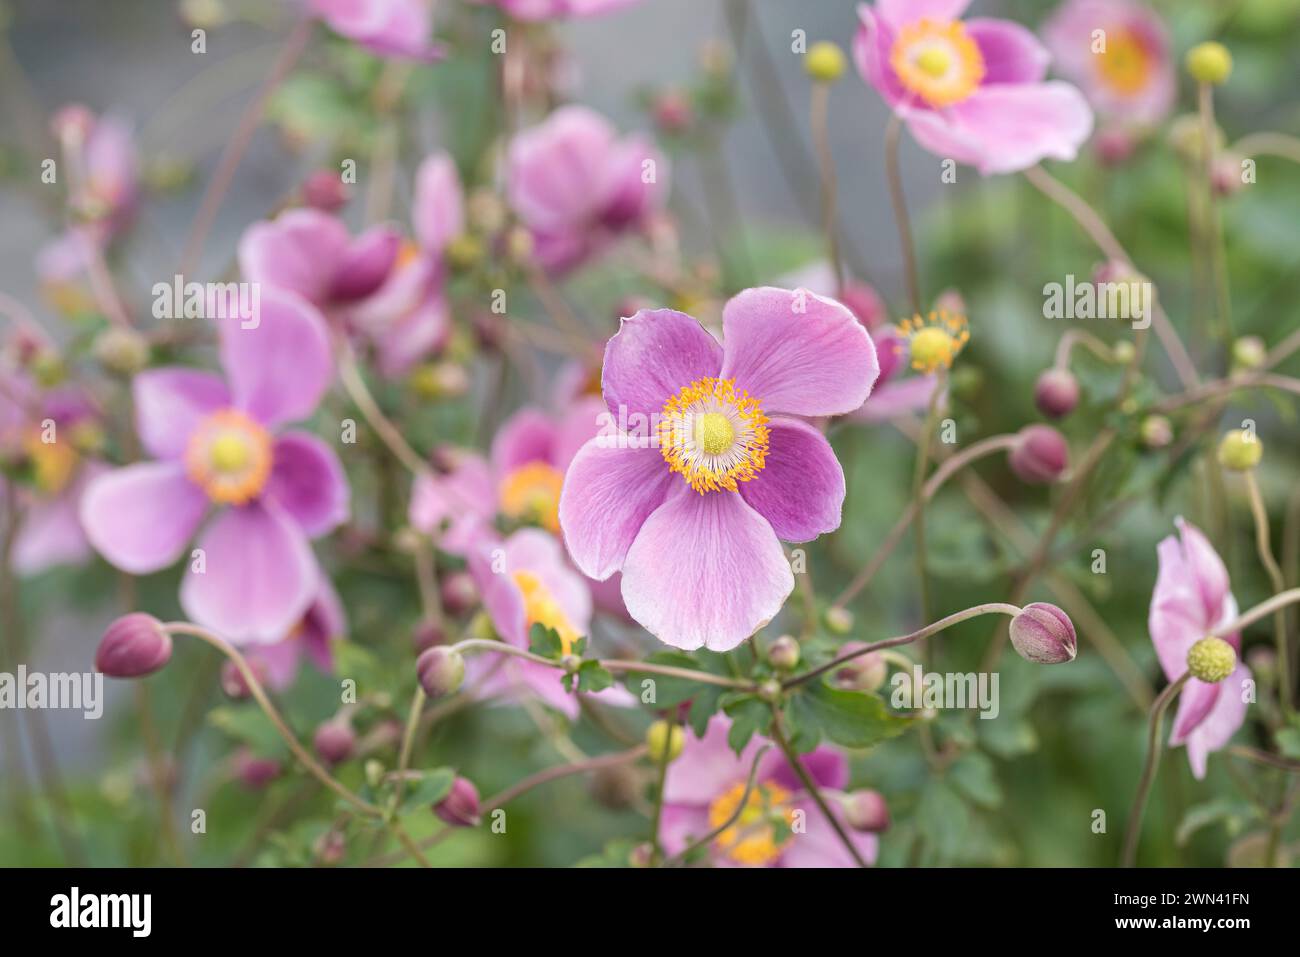 Herbst-Anemone (Anemone hupehensis 'Praecox') Stock Photo